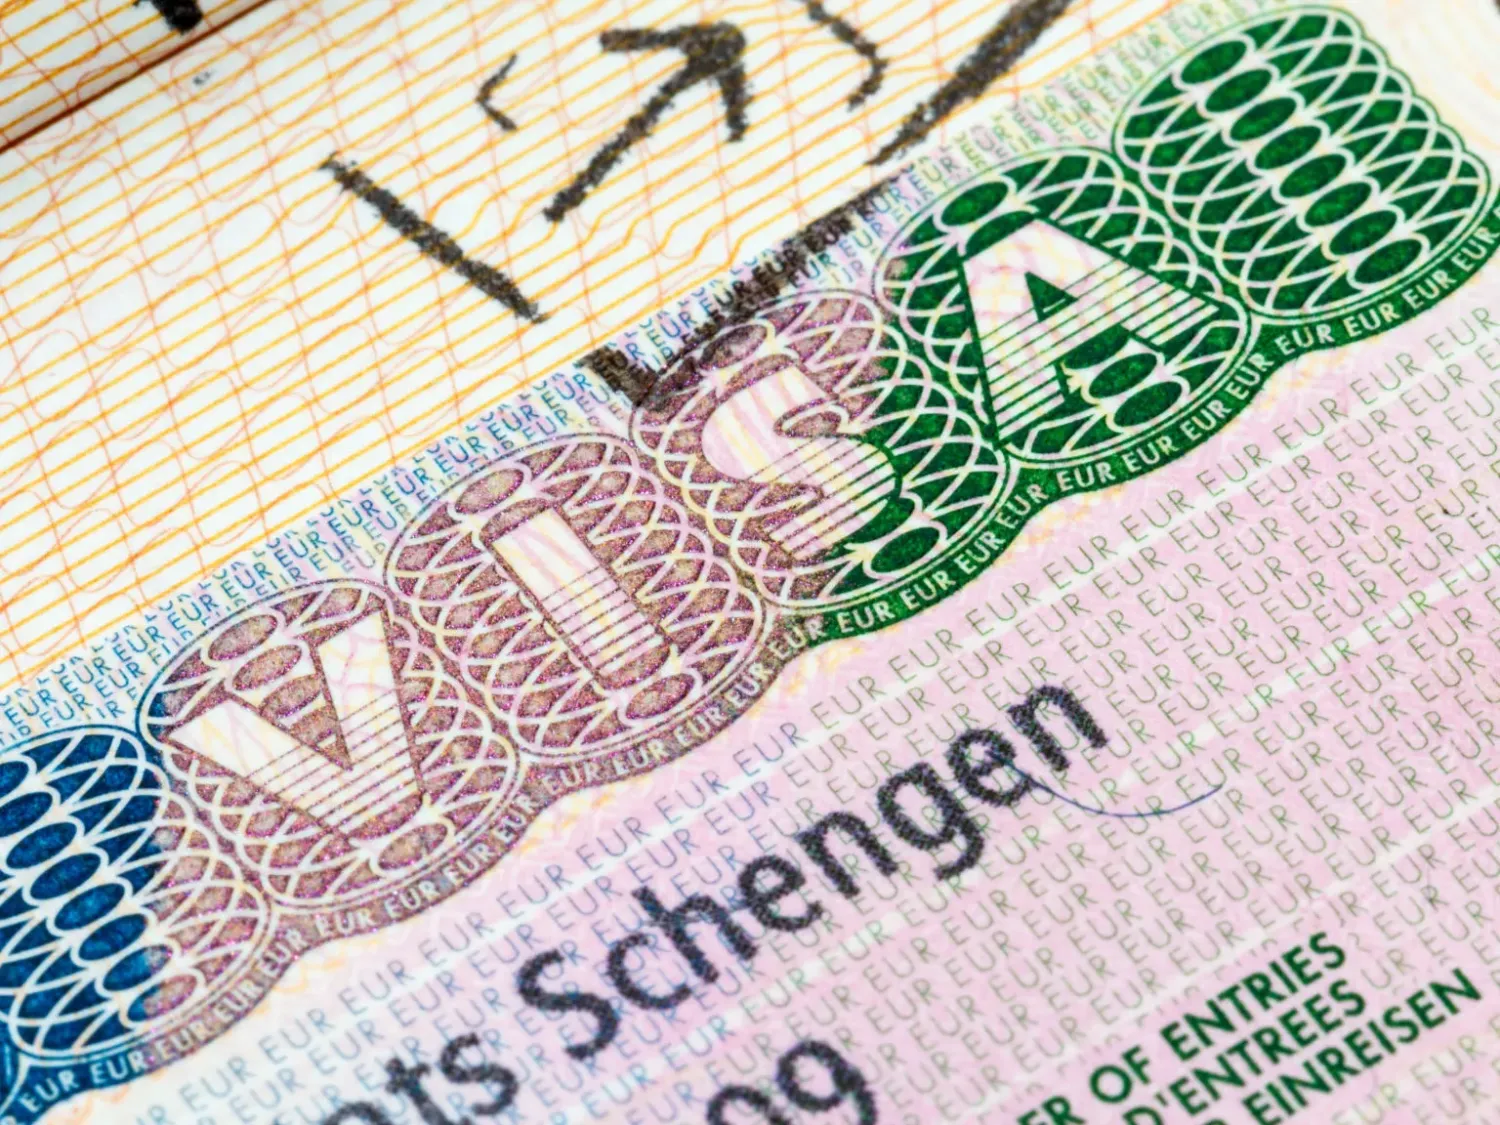 Шенгенская виза подорожает на 12 процентов